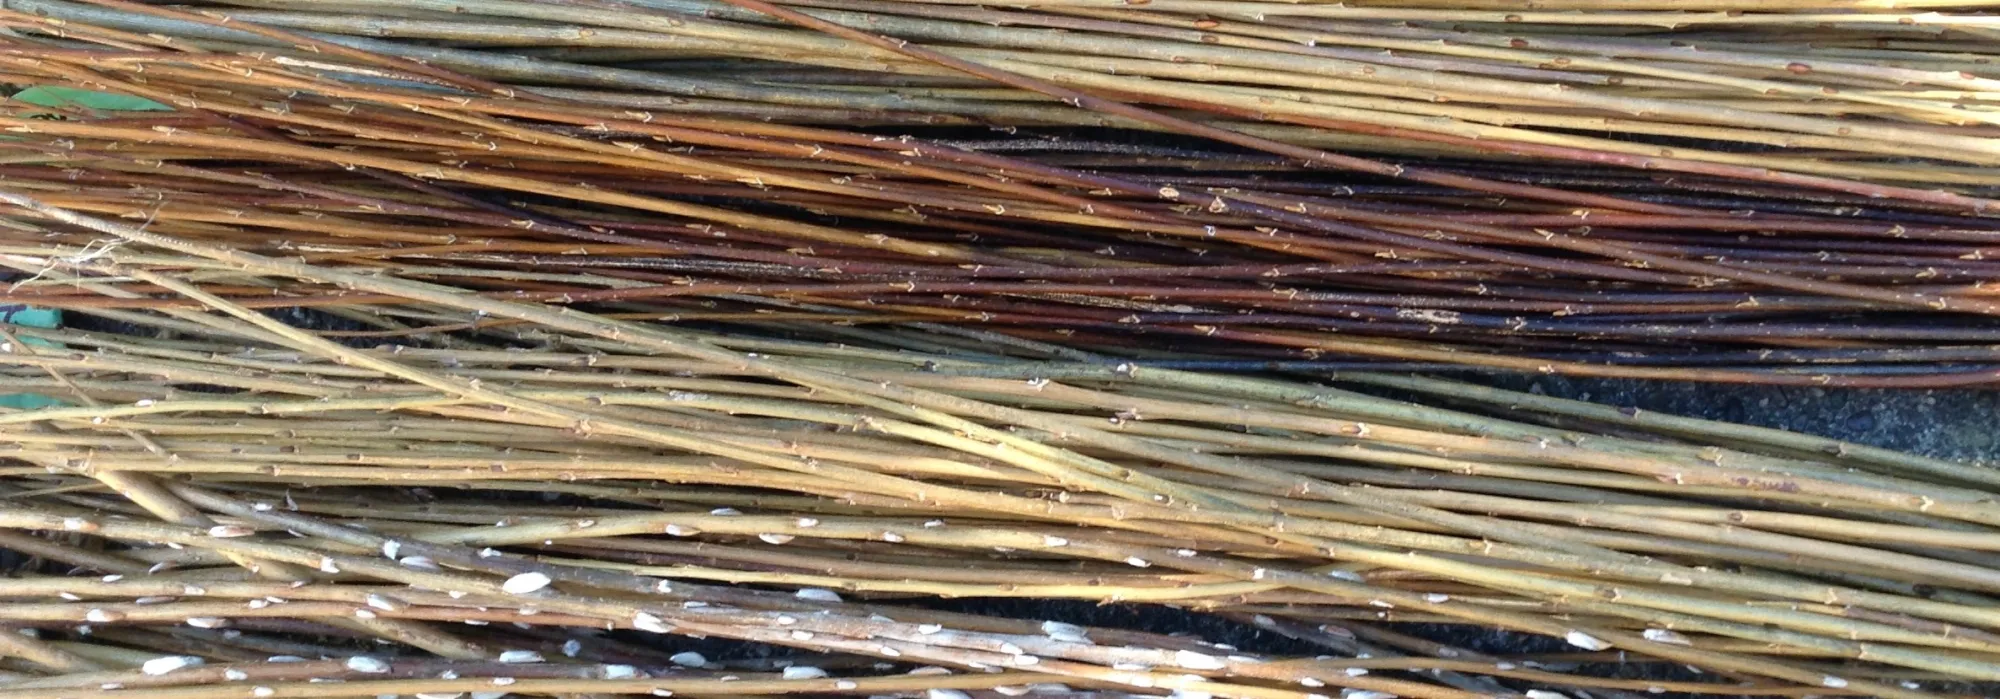 Willow varieties